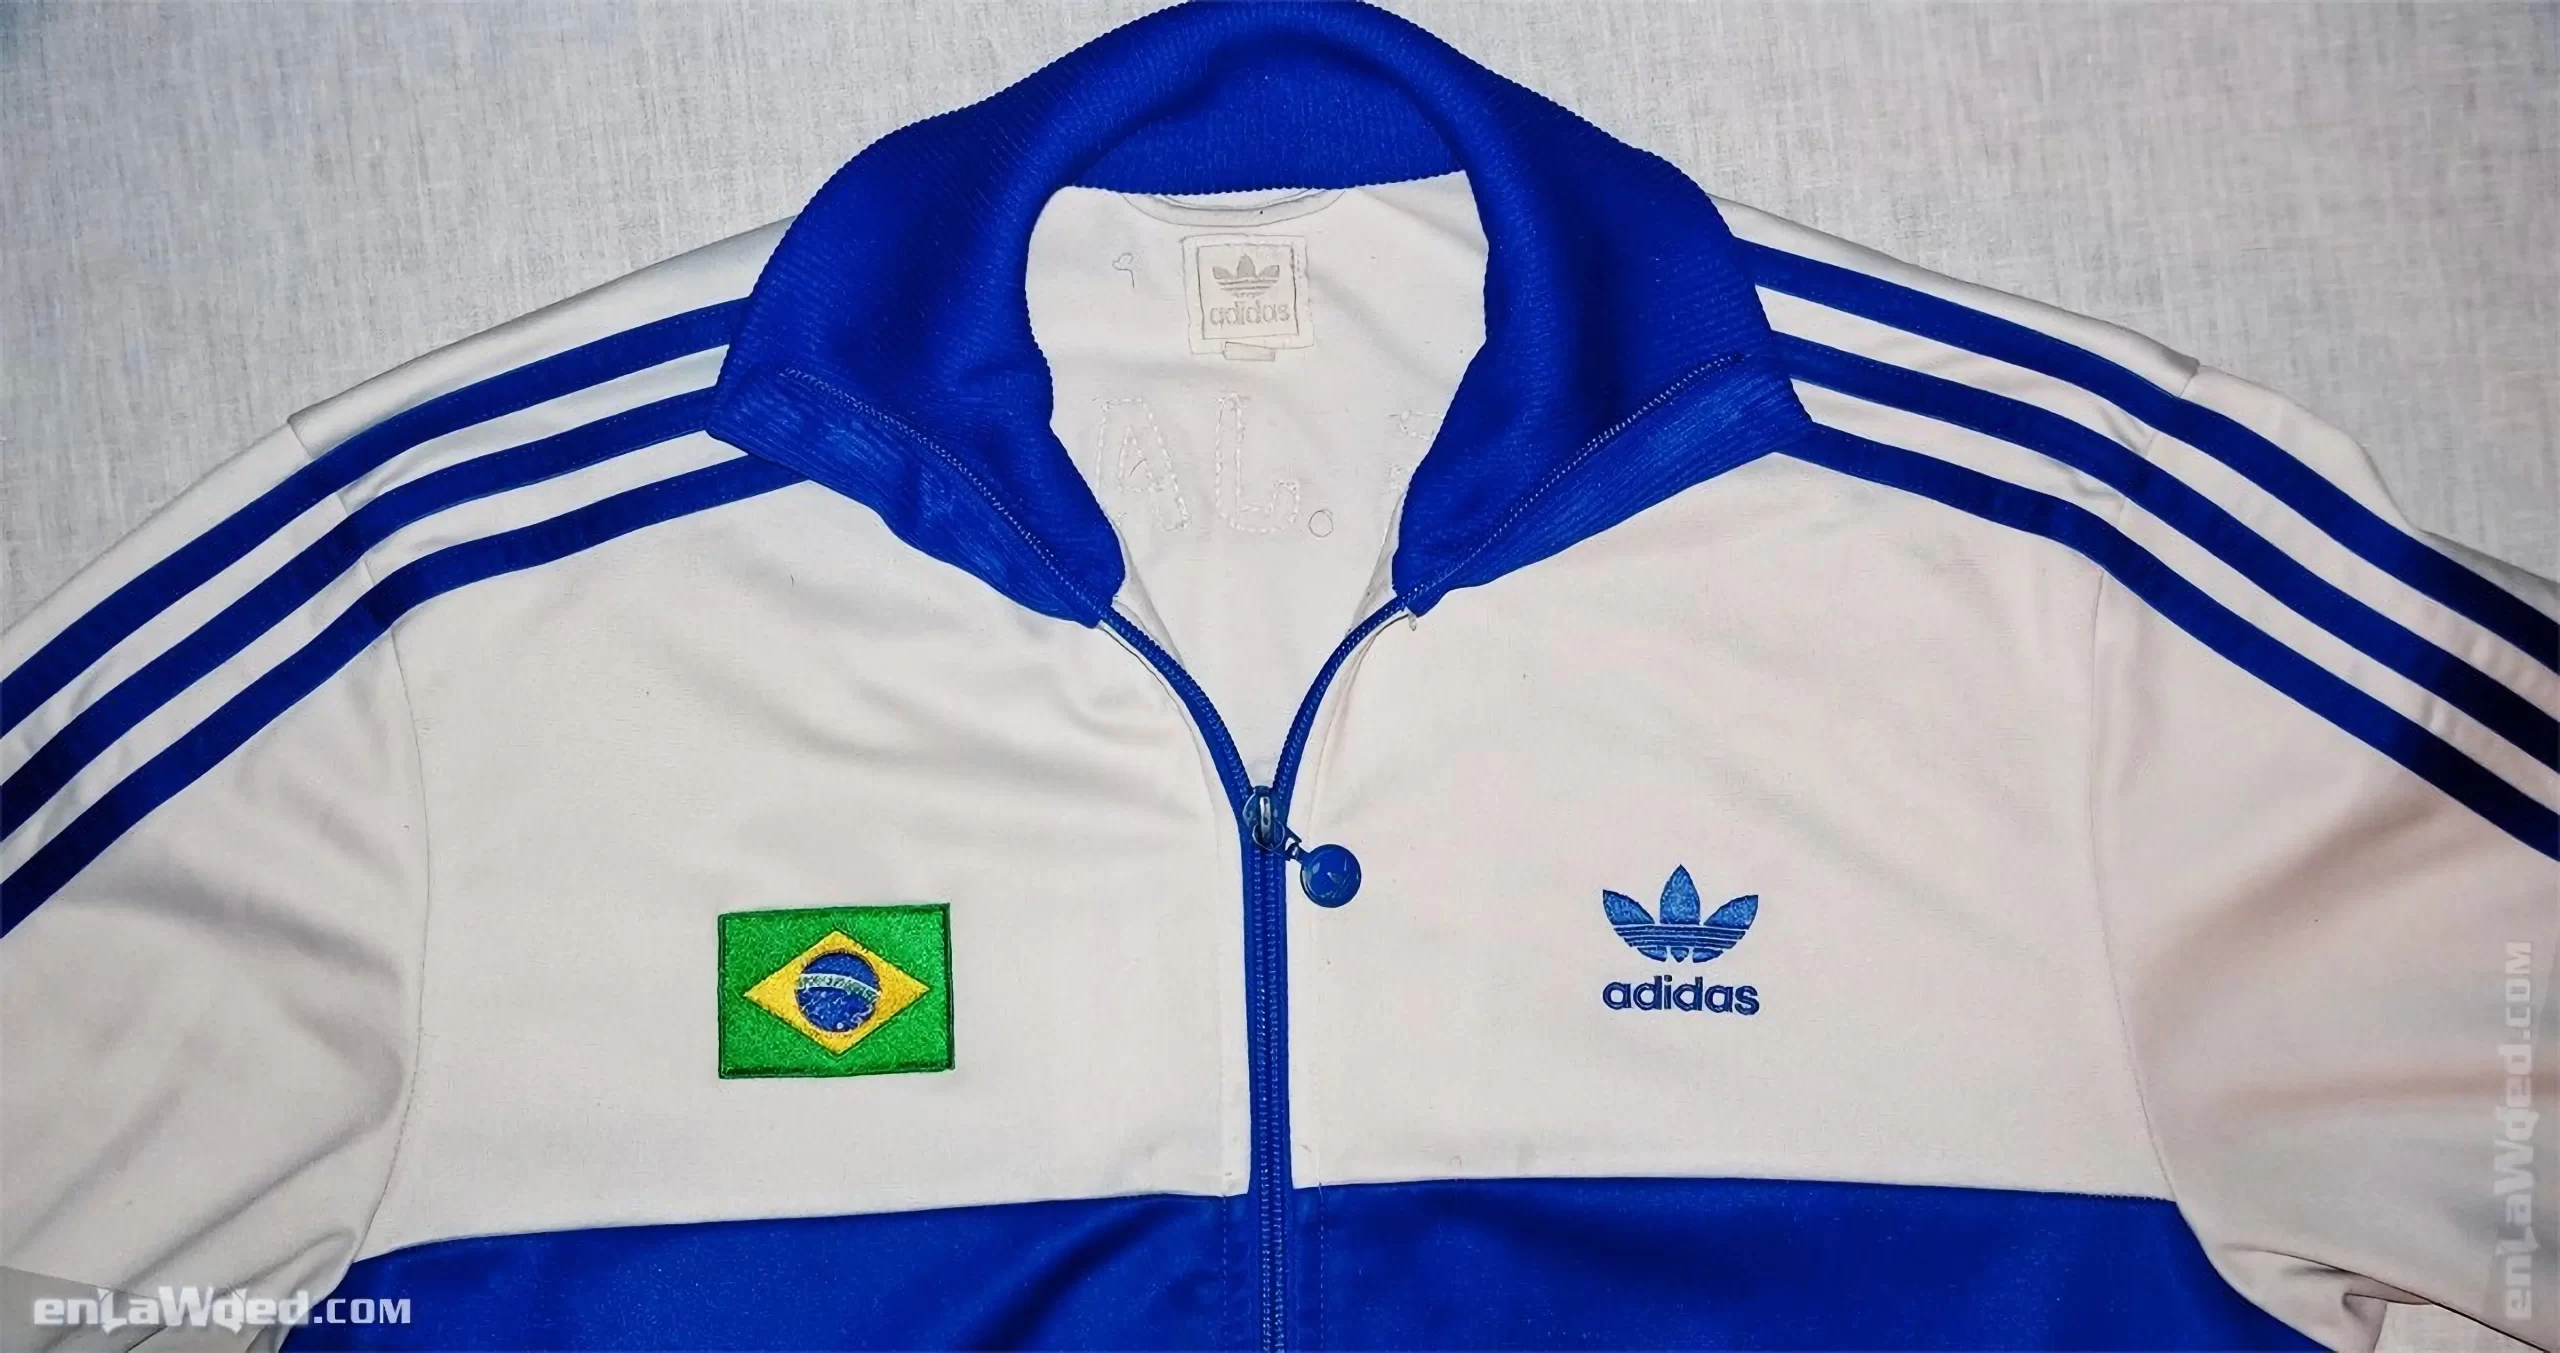 Men’s 2006 Rio de Janeiro TT-One by Adidas Originals: Carefree (EnLawded.com file #lmc5elod3owuta8v7nr)